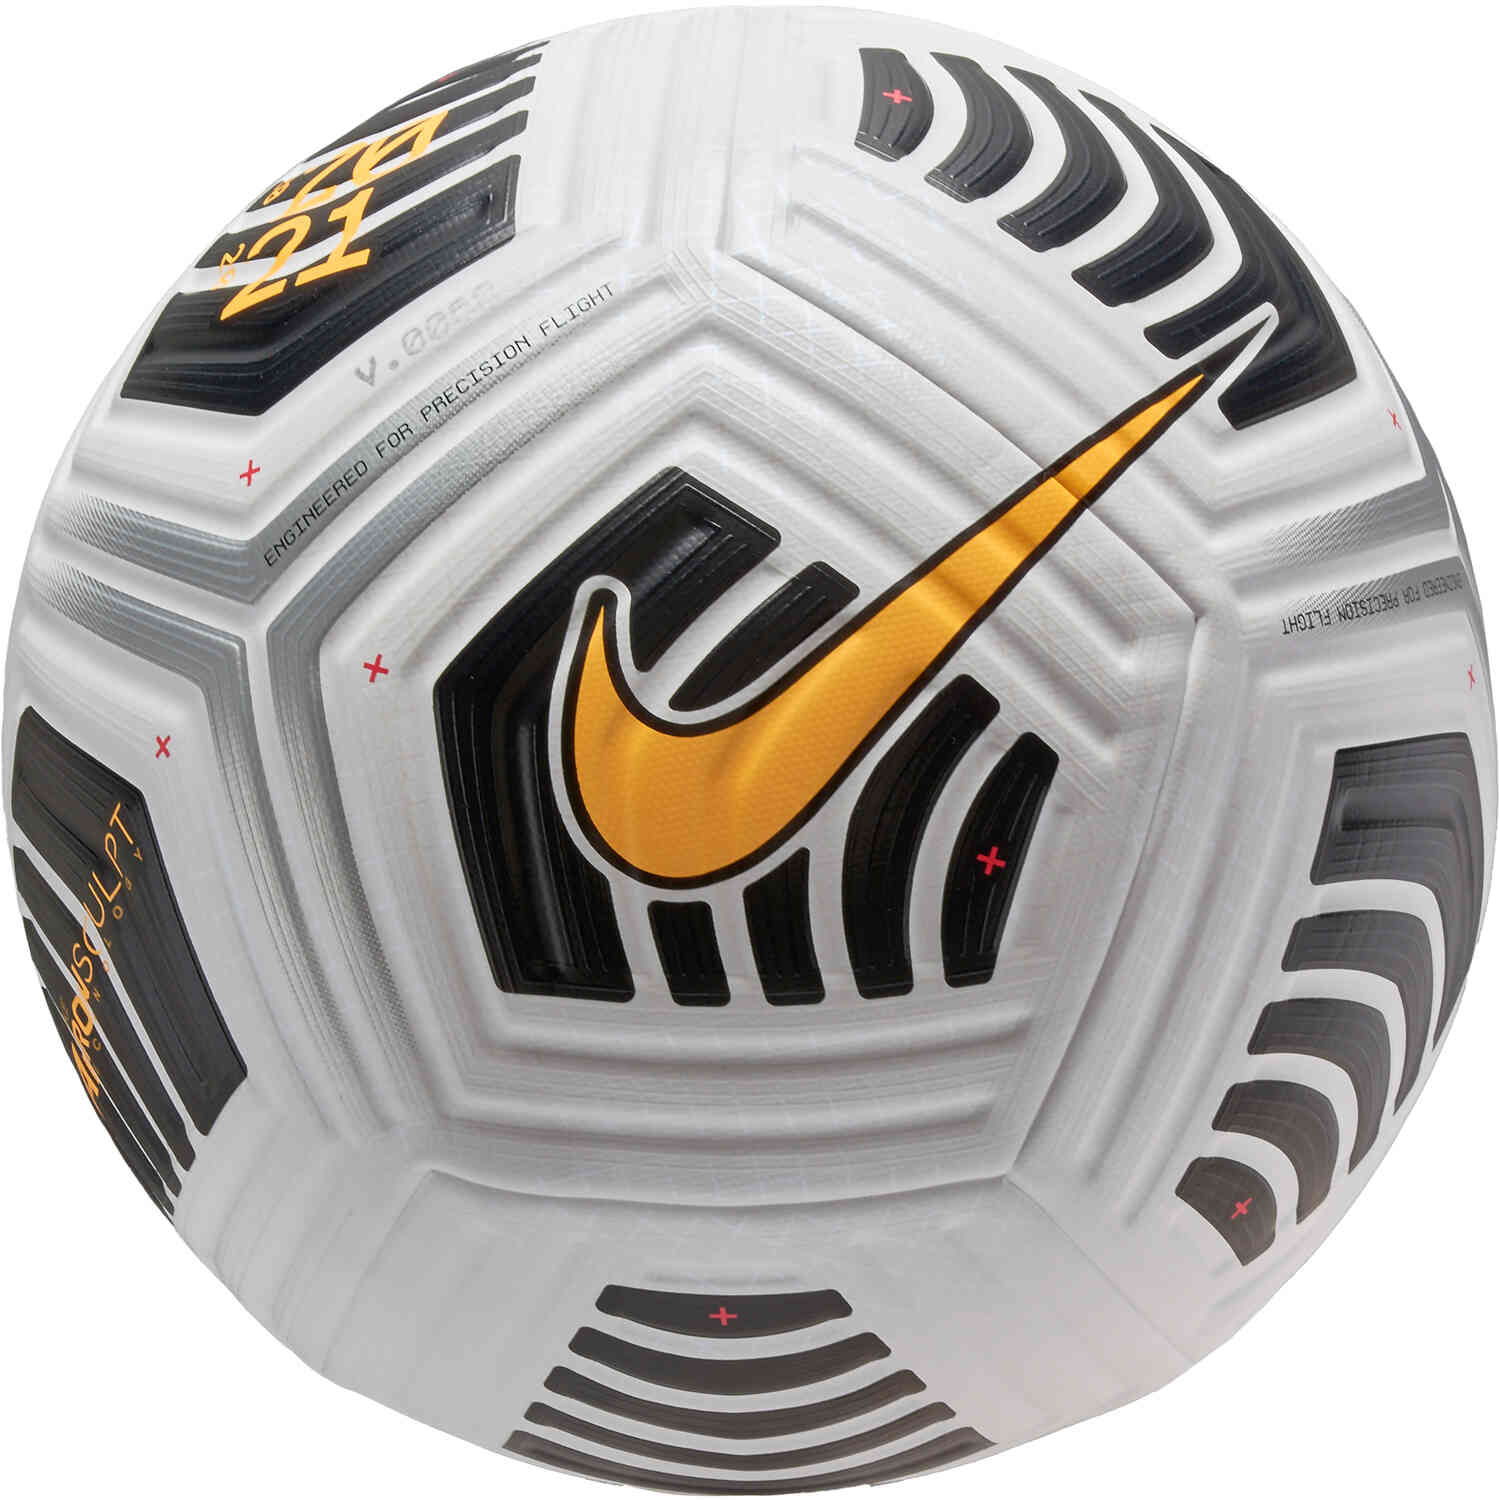 Nike Flight Premium Match Soccer Ball - White & Black with Laser Orange -  Soccer Master